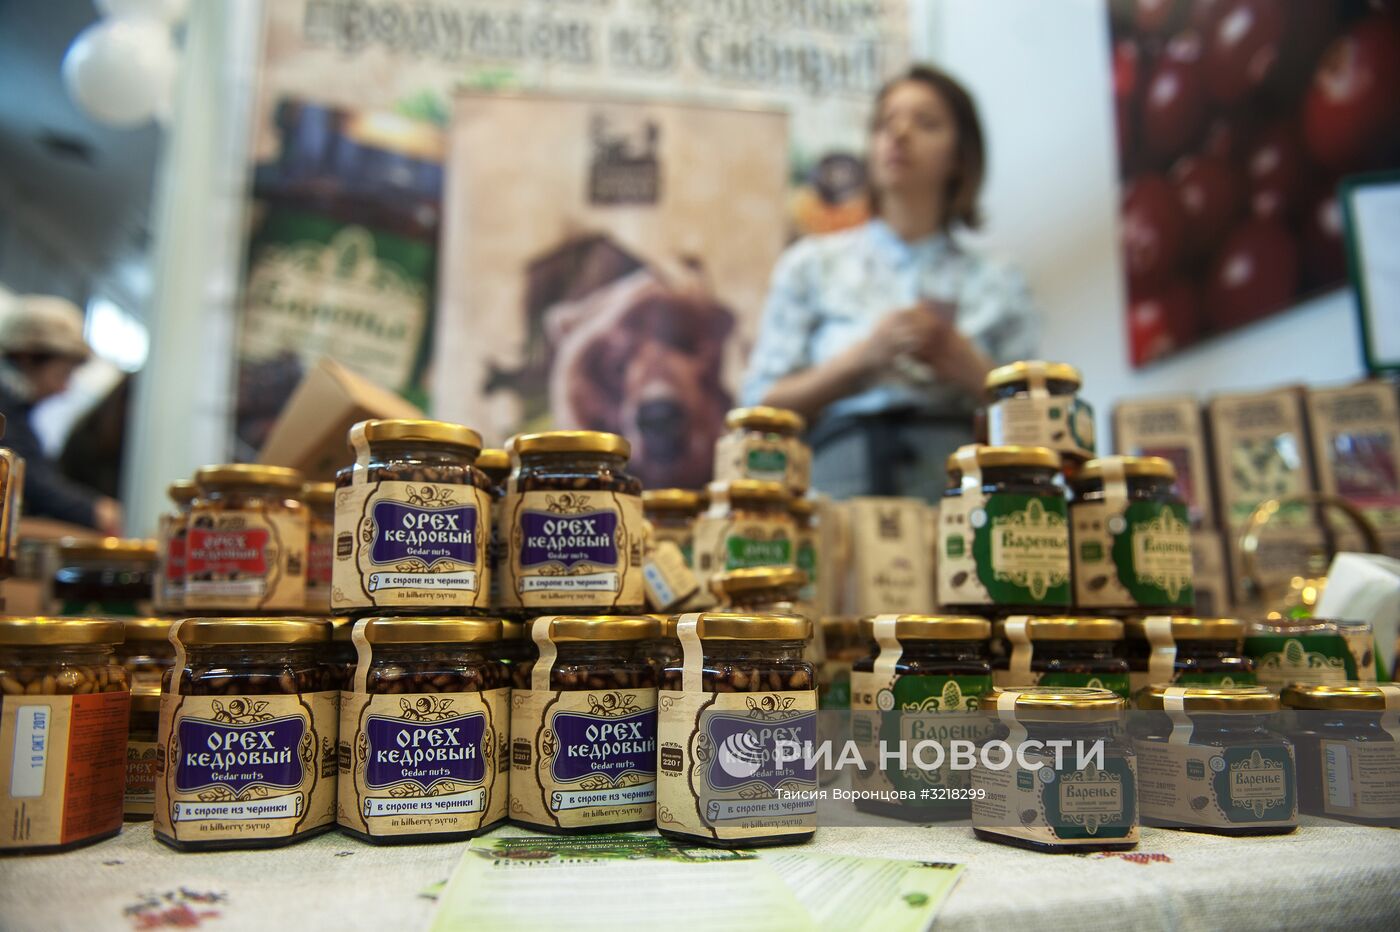 Аграрная выставка "Золотая осень" в Томске